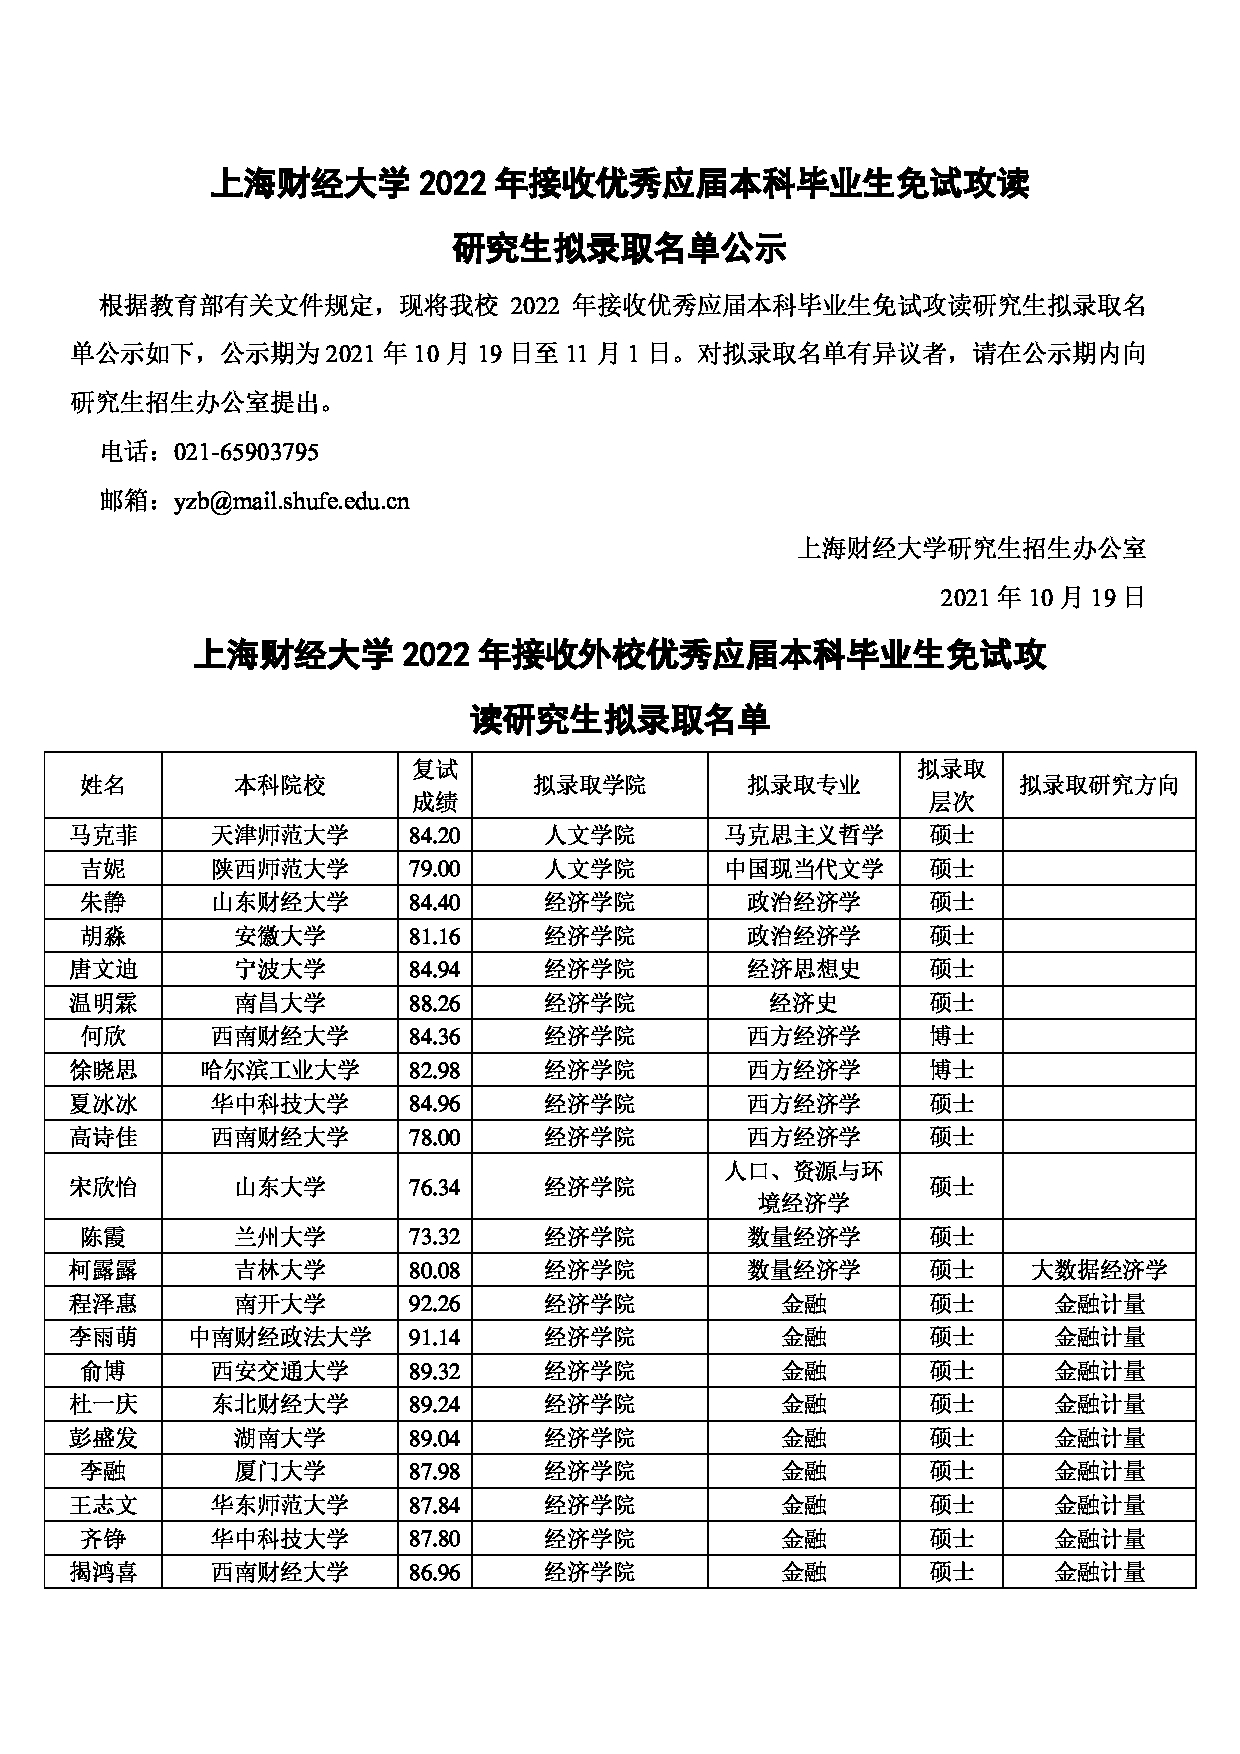 2022考研拟录取名单：上海财经大学2022年推免硕士研究生拟录取名单